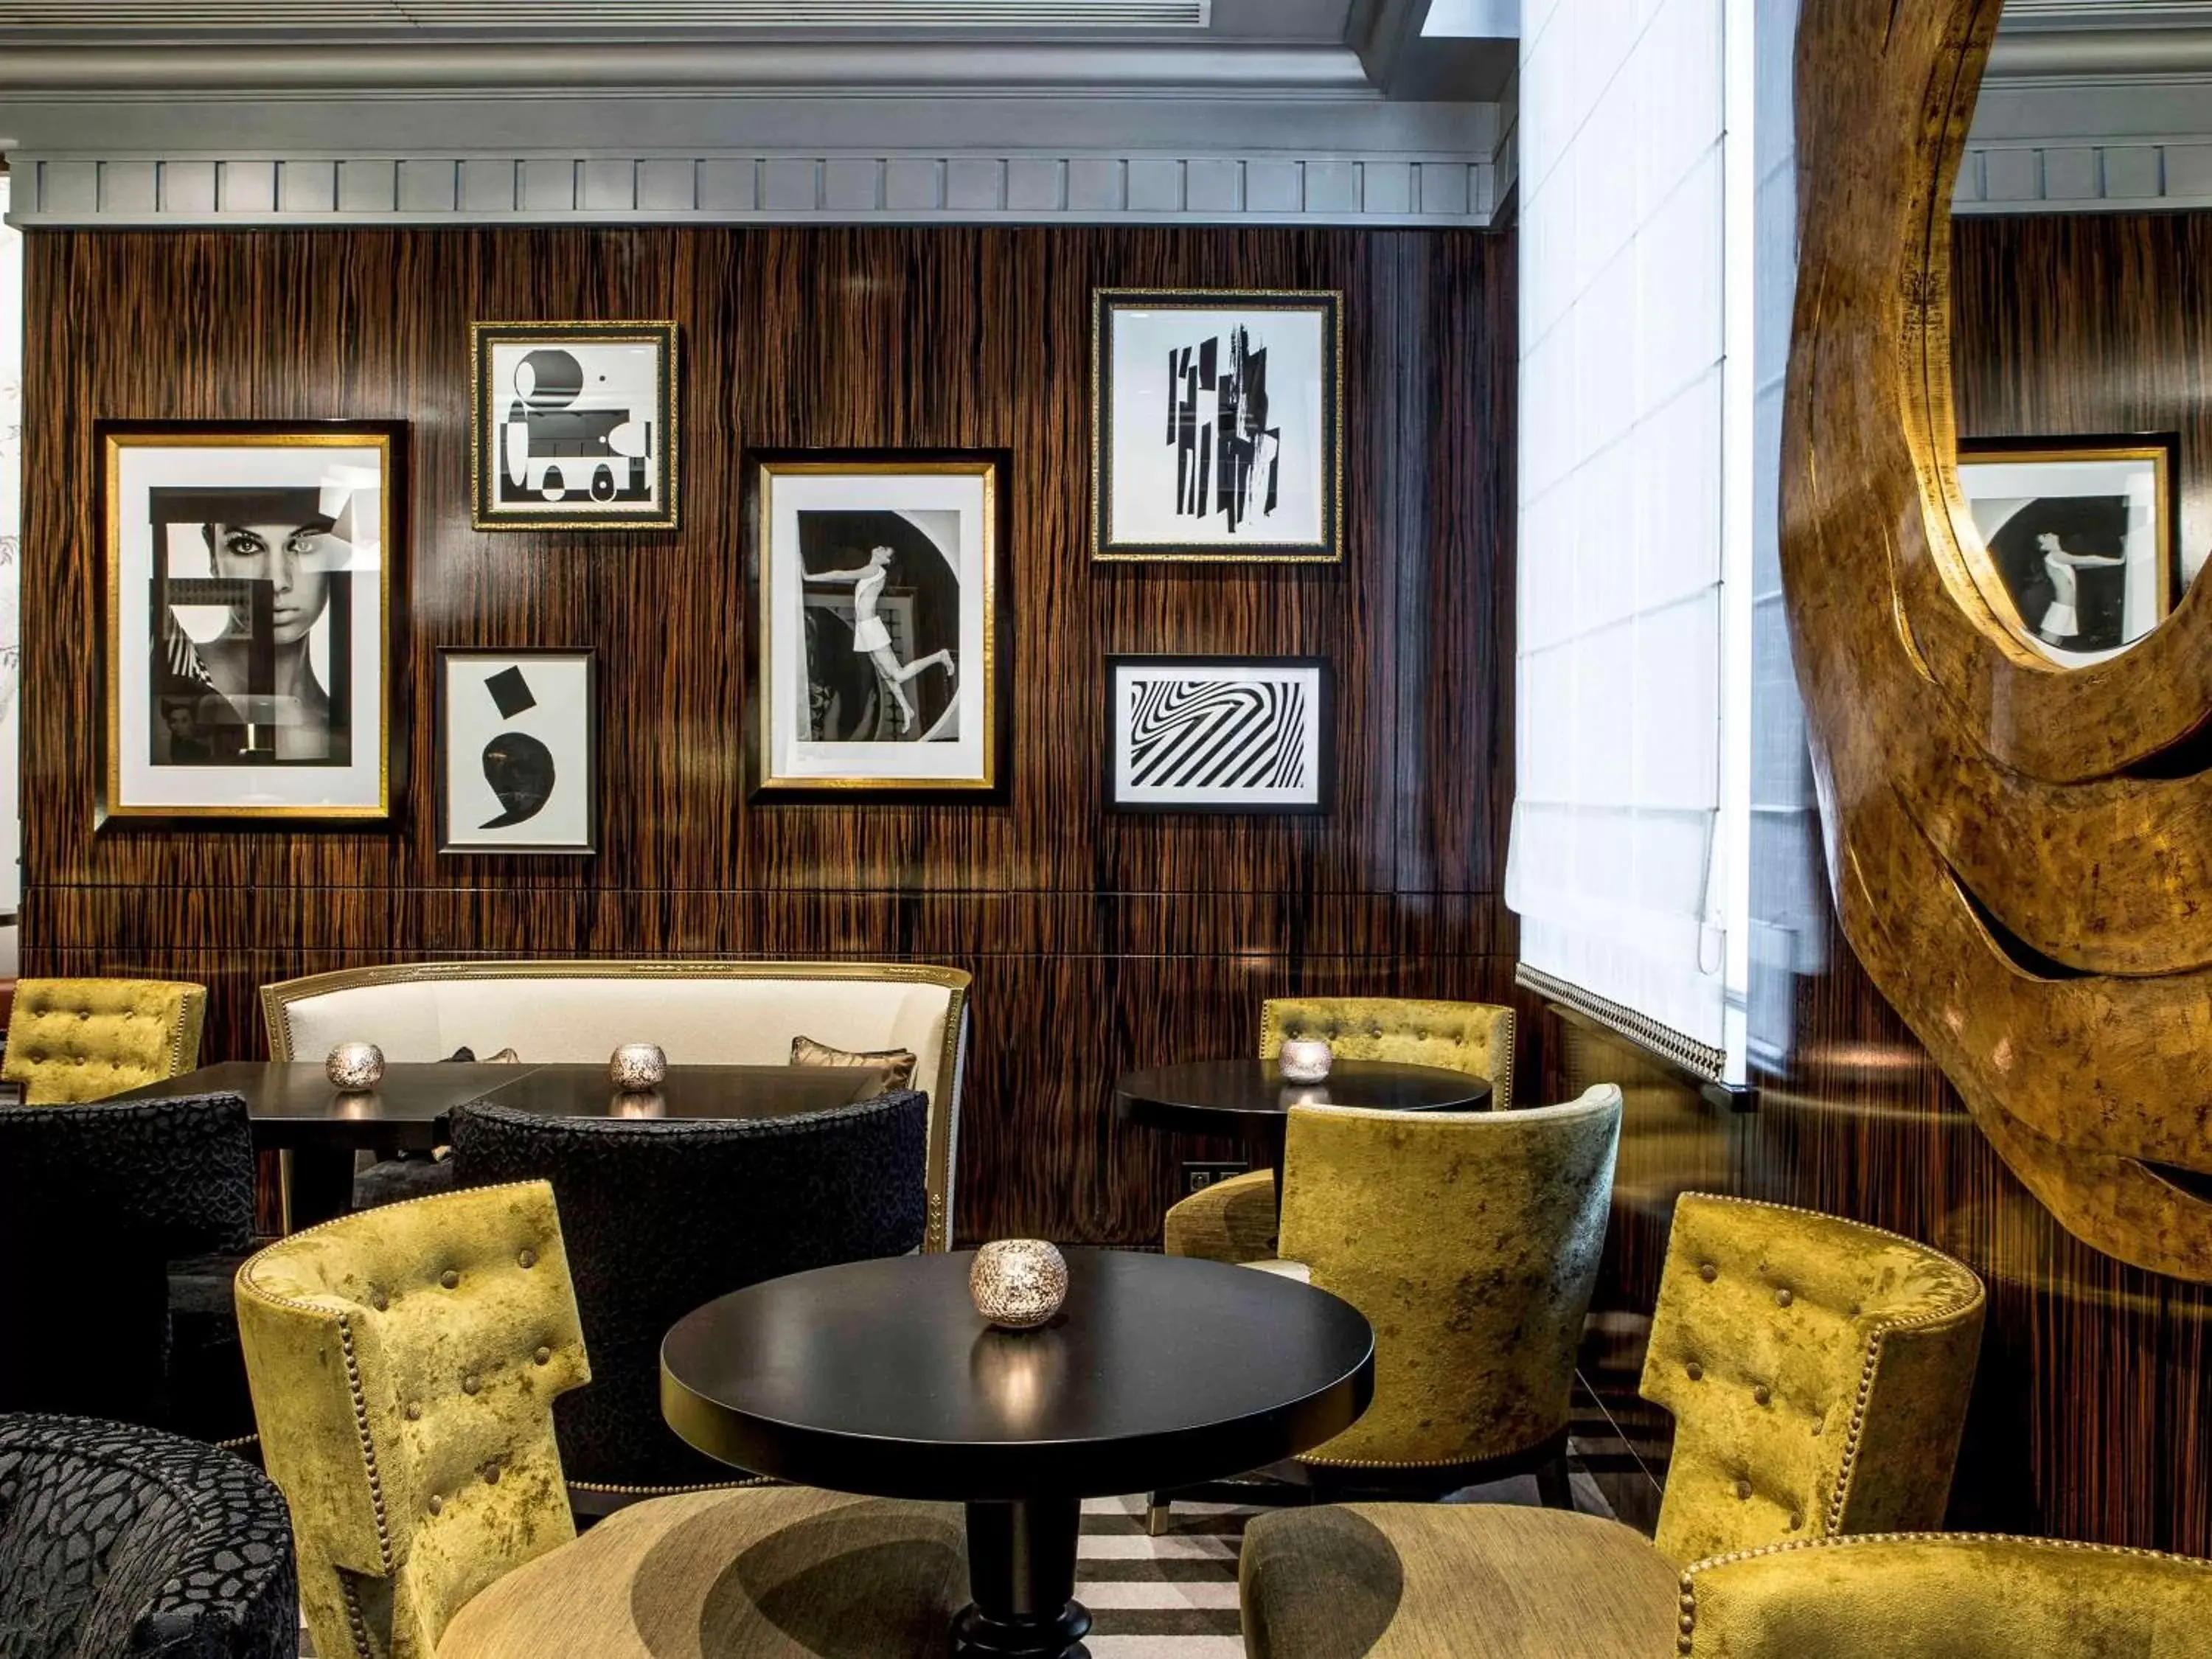 Restaurant/places to eat, Lounge/Bar in Sofitel Paris Le Faubourg